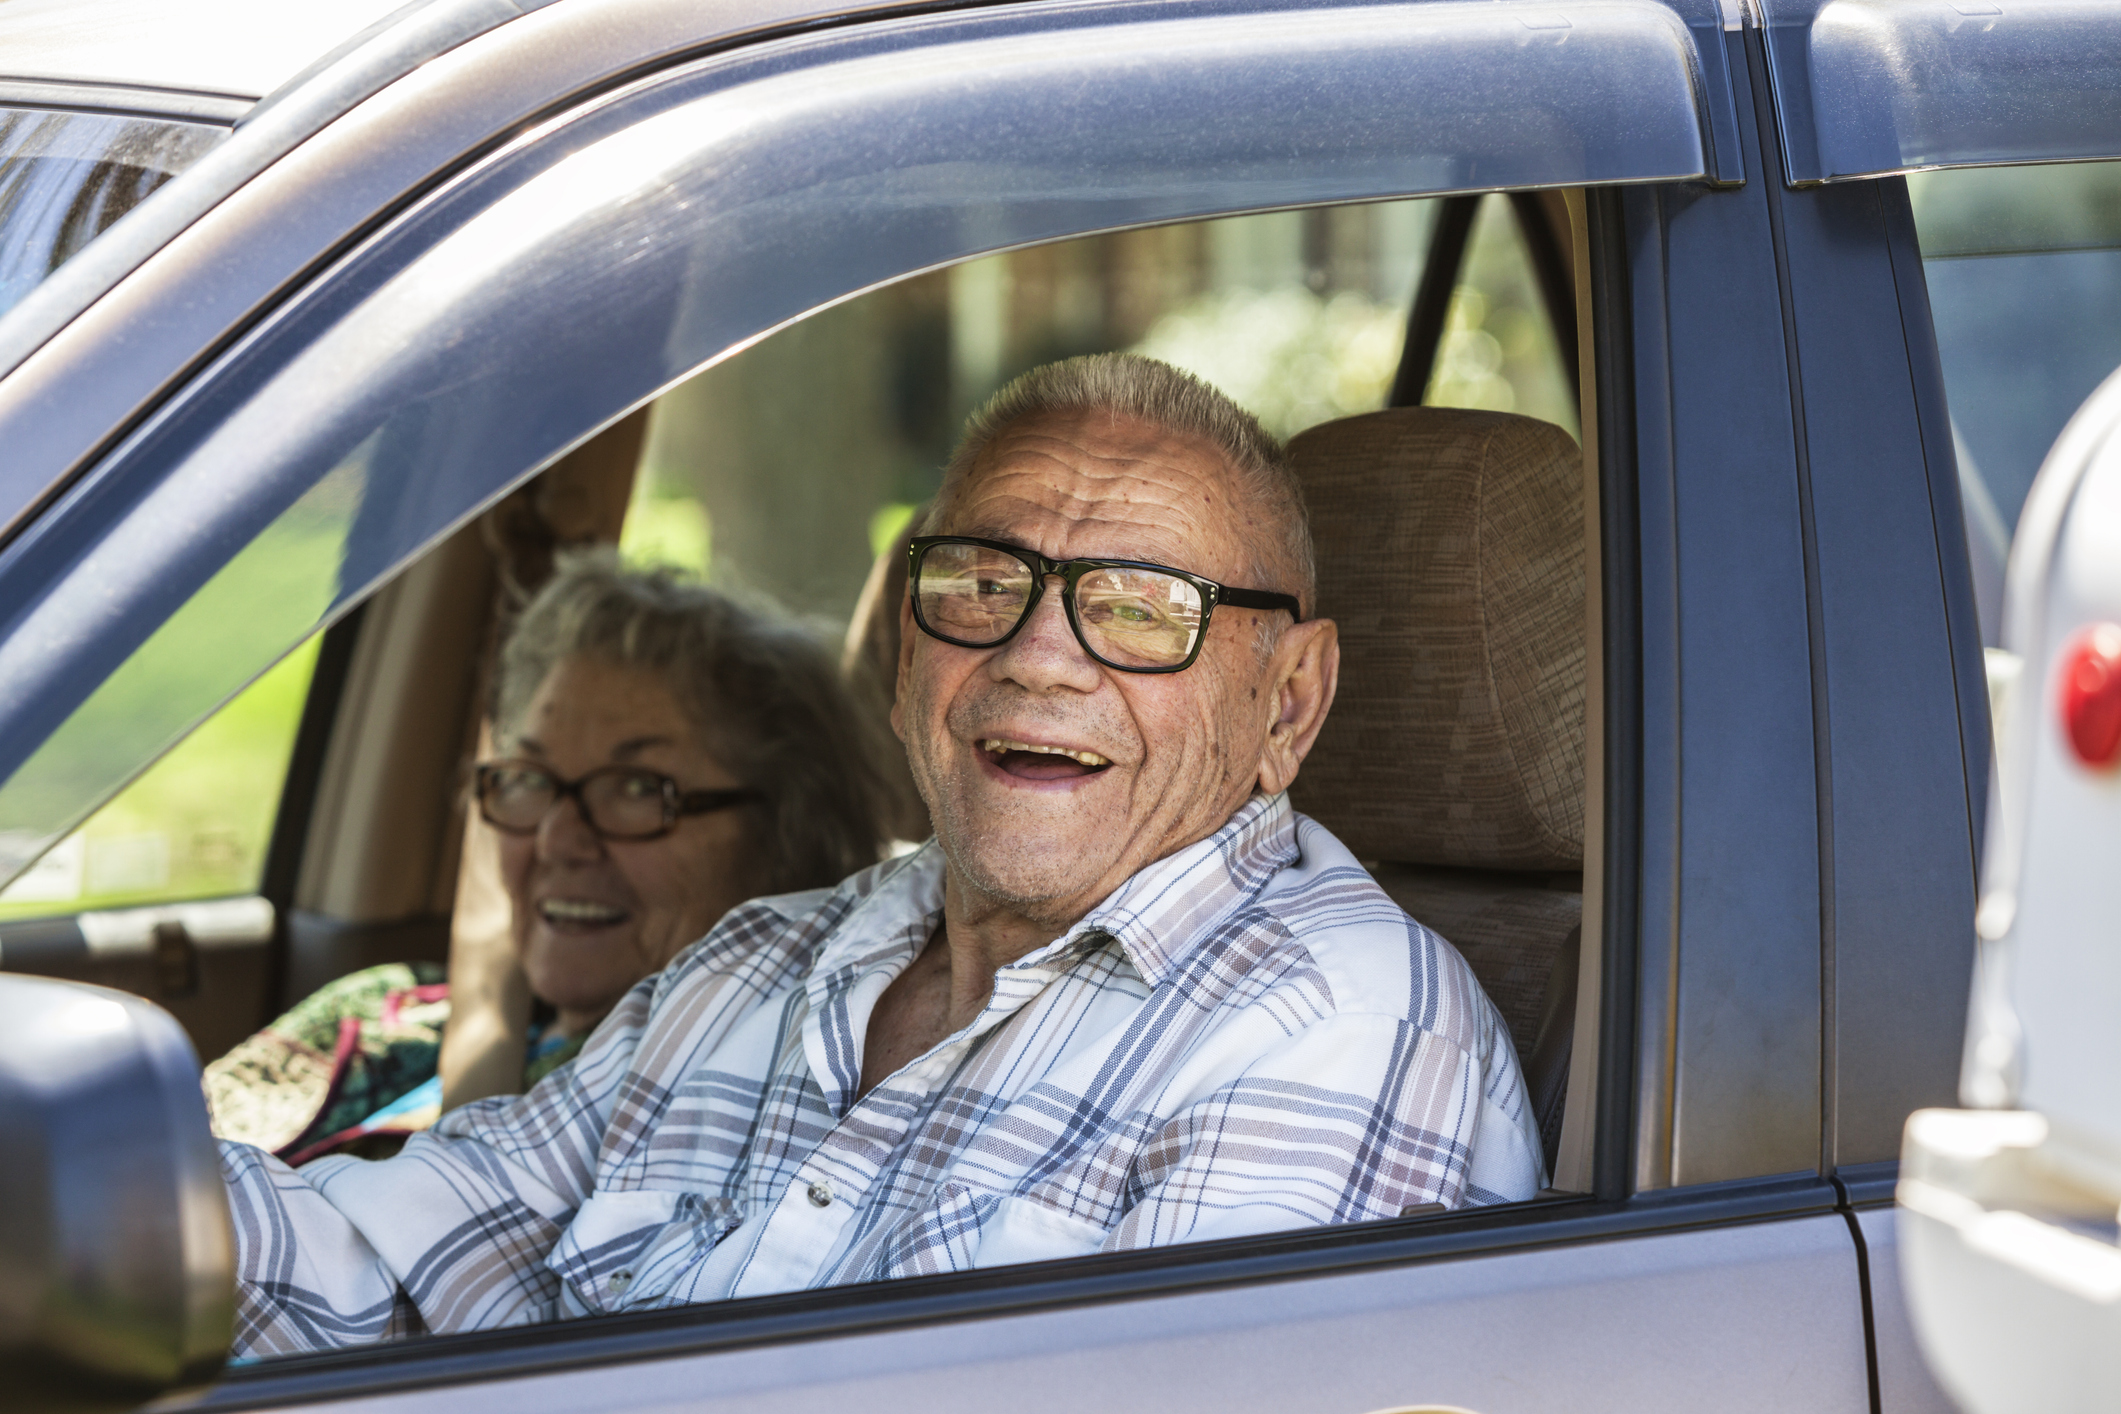 driving tips for senior citizens